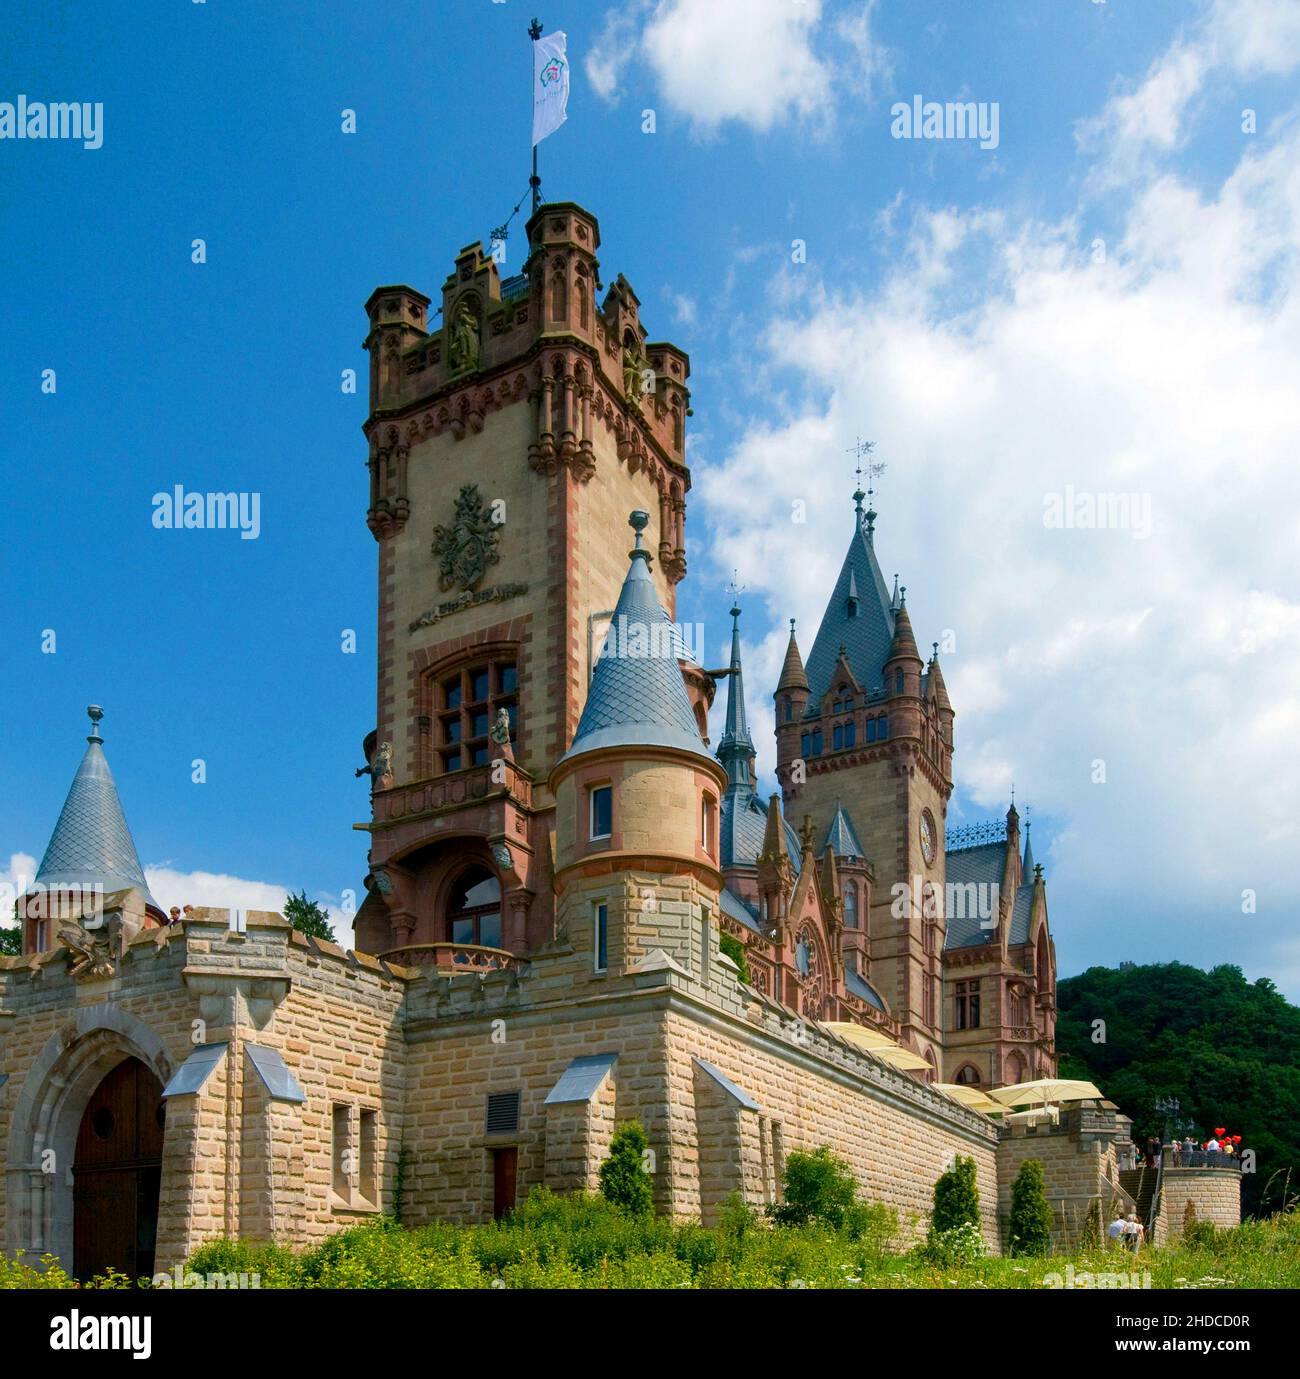 Europa, Deutschland, Nordrhein-Westfalen, Koenigswinter im Naturpark Siebengebirge, Schloss Drachenburg, erbaut 1882, Stock Photo